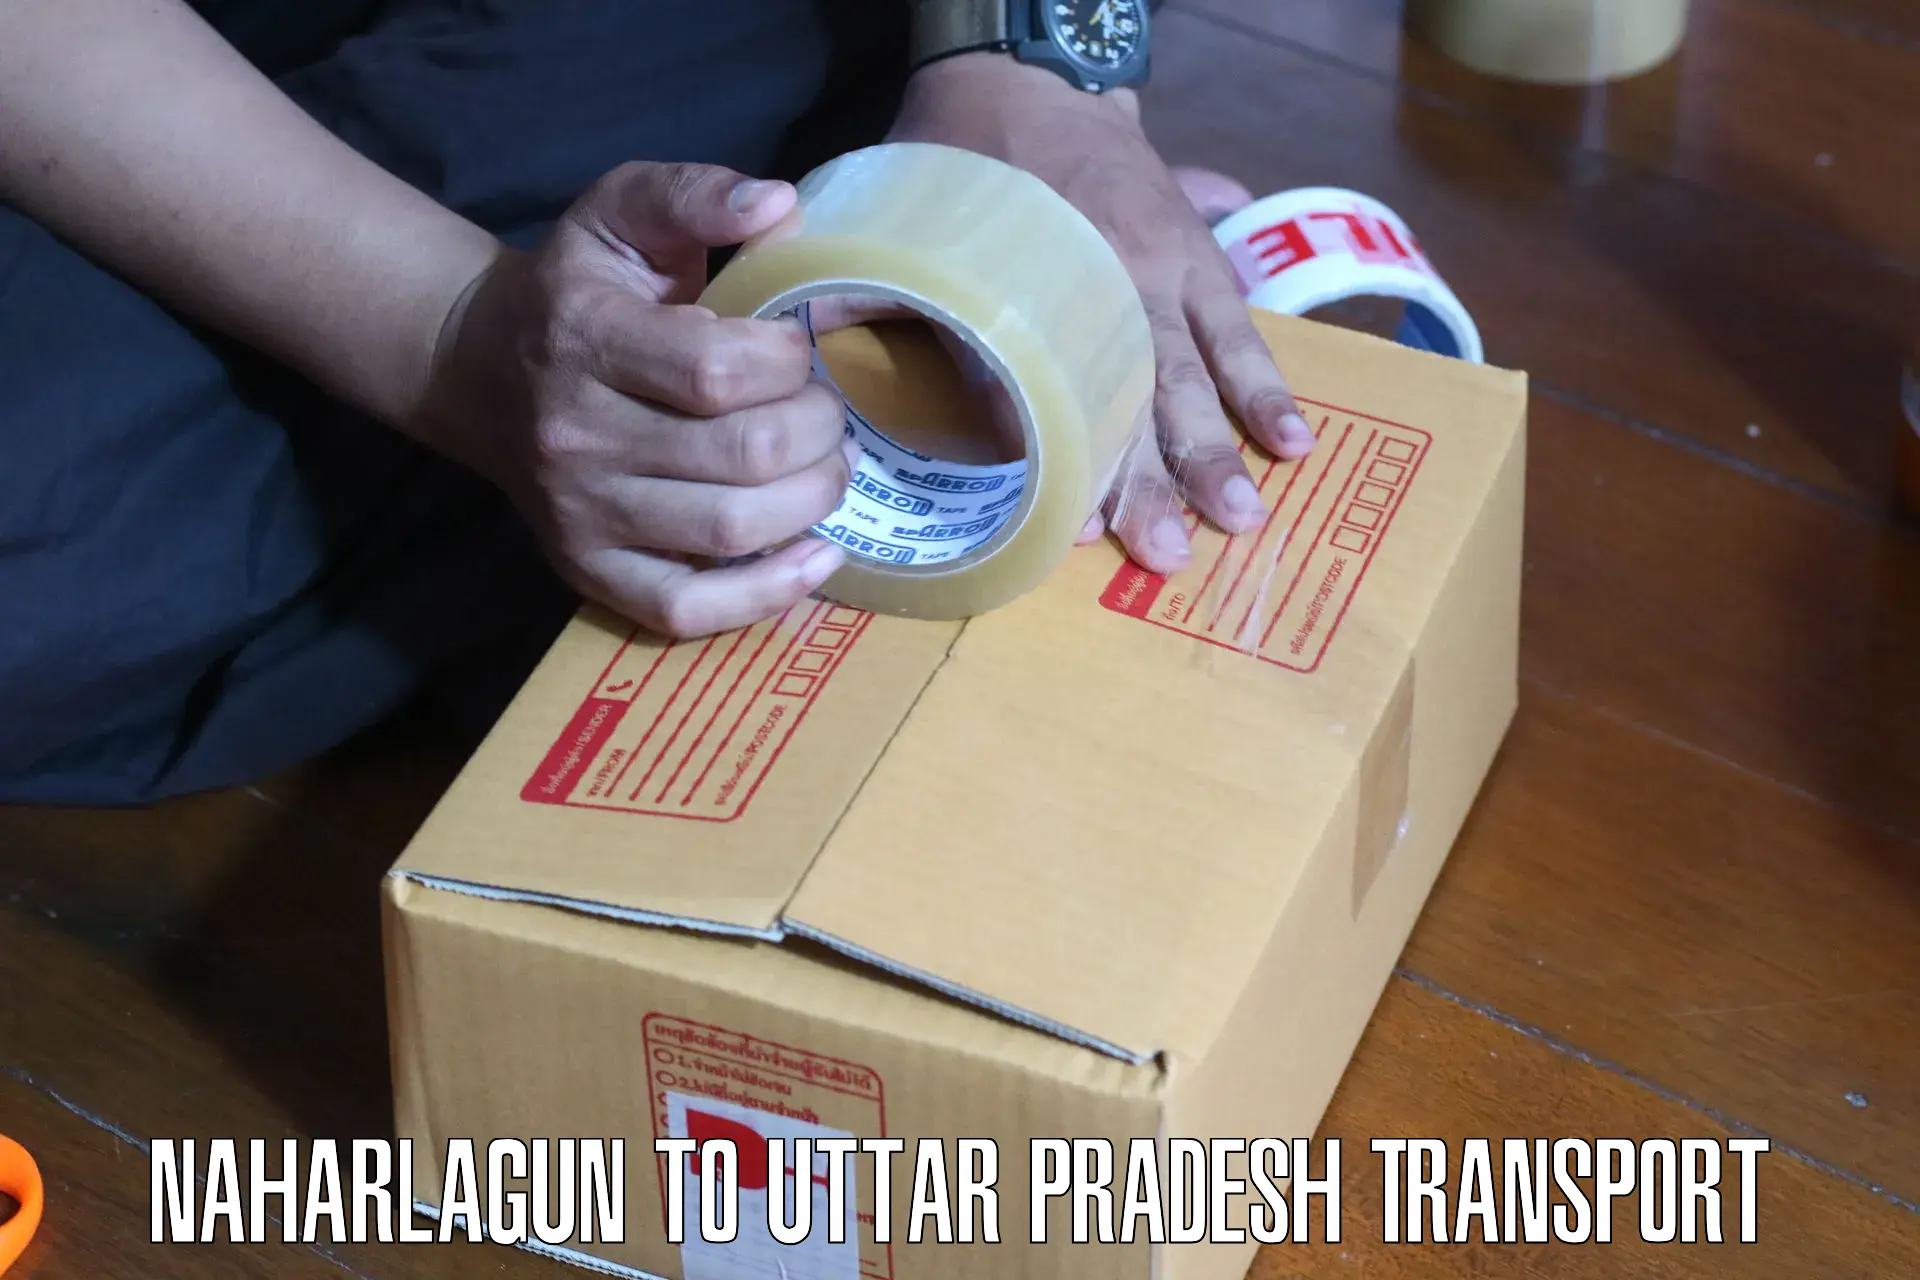 Material transport services Naharlagun to Pahasu